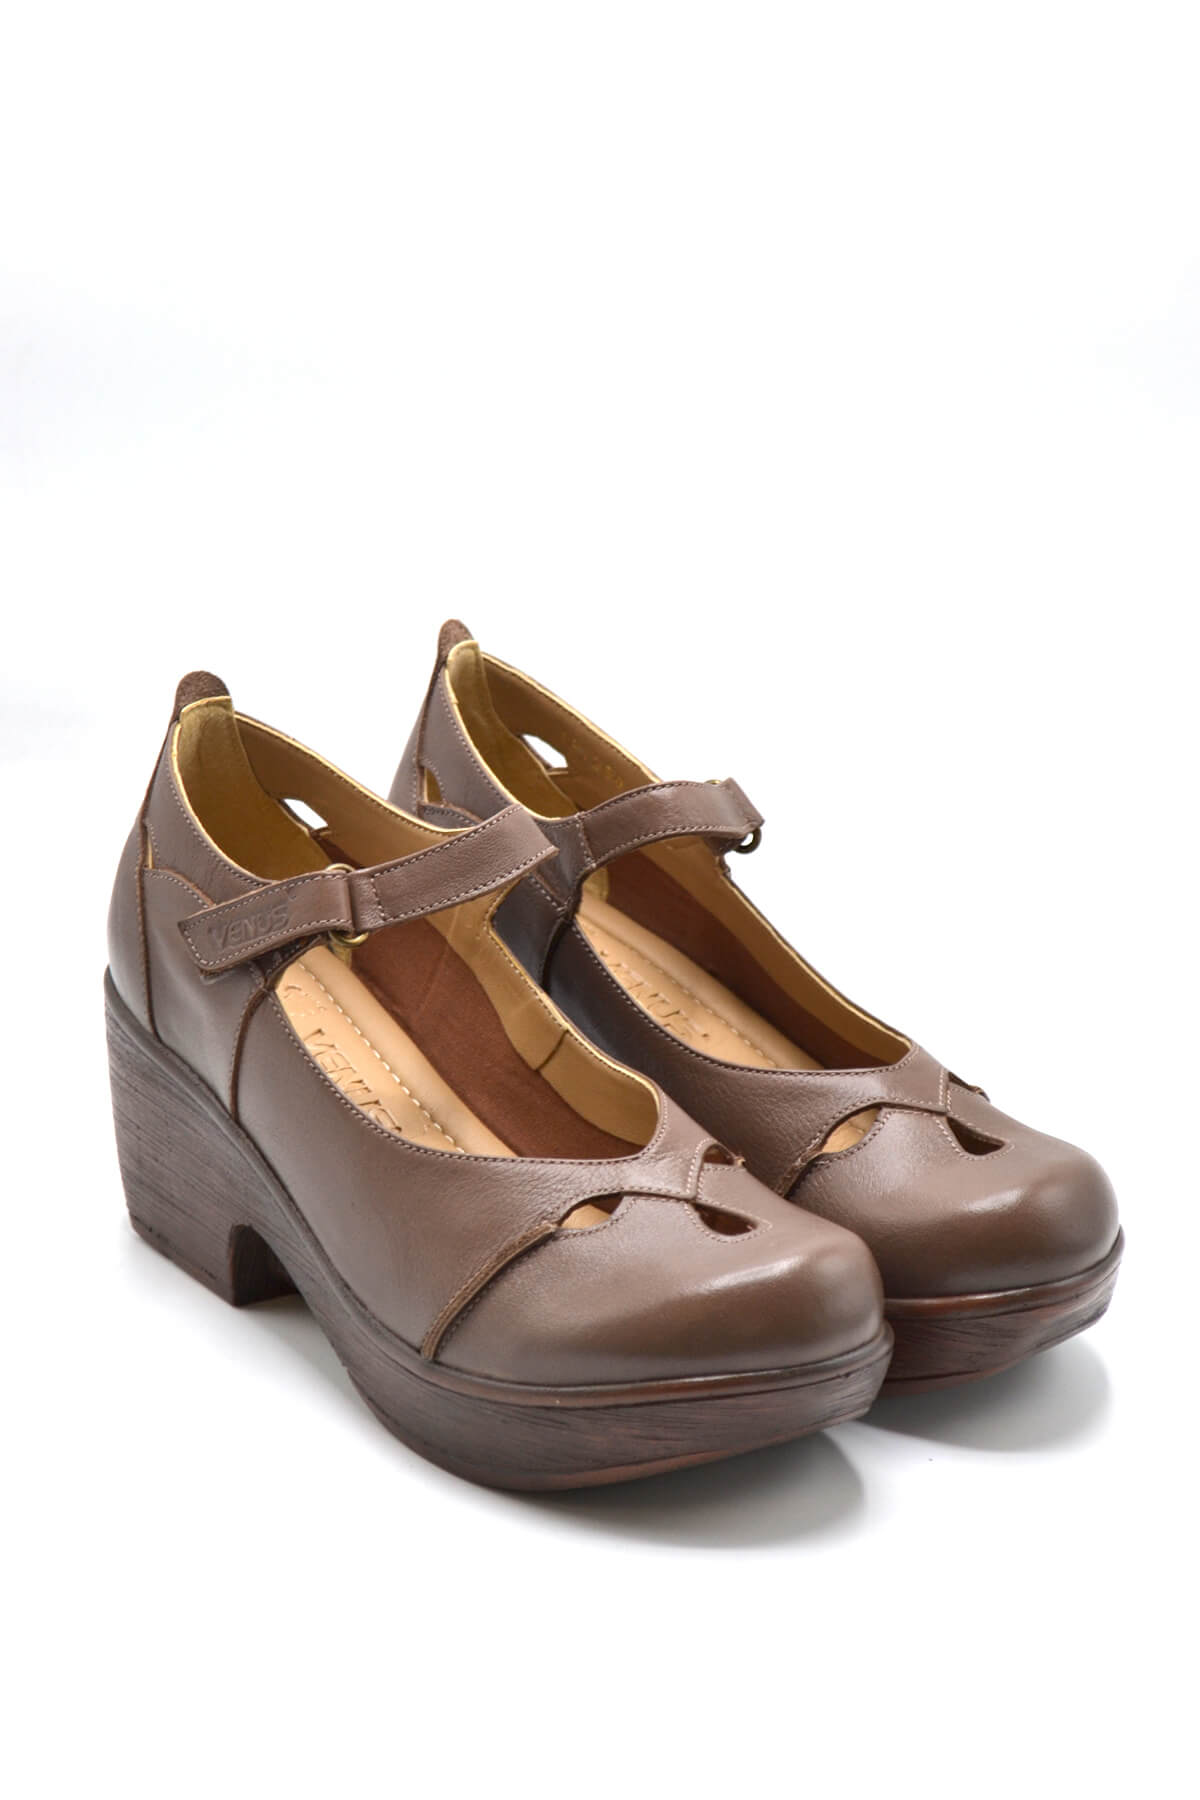 Kadın Apartman Topuk Deri Ayakkabı Dark Vizon 1912501